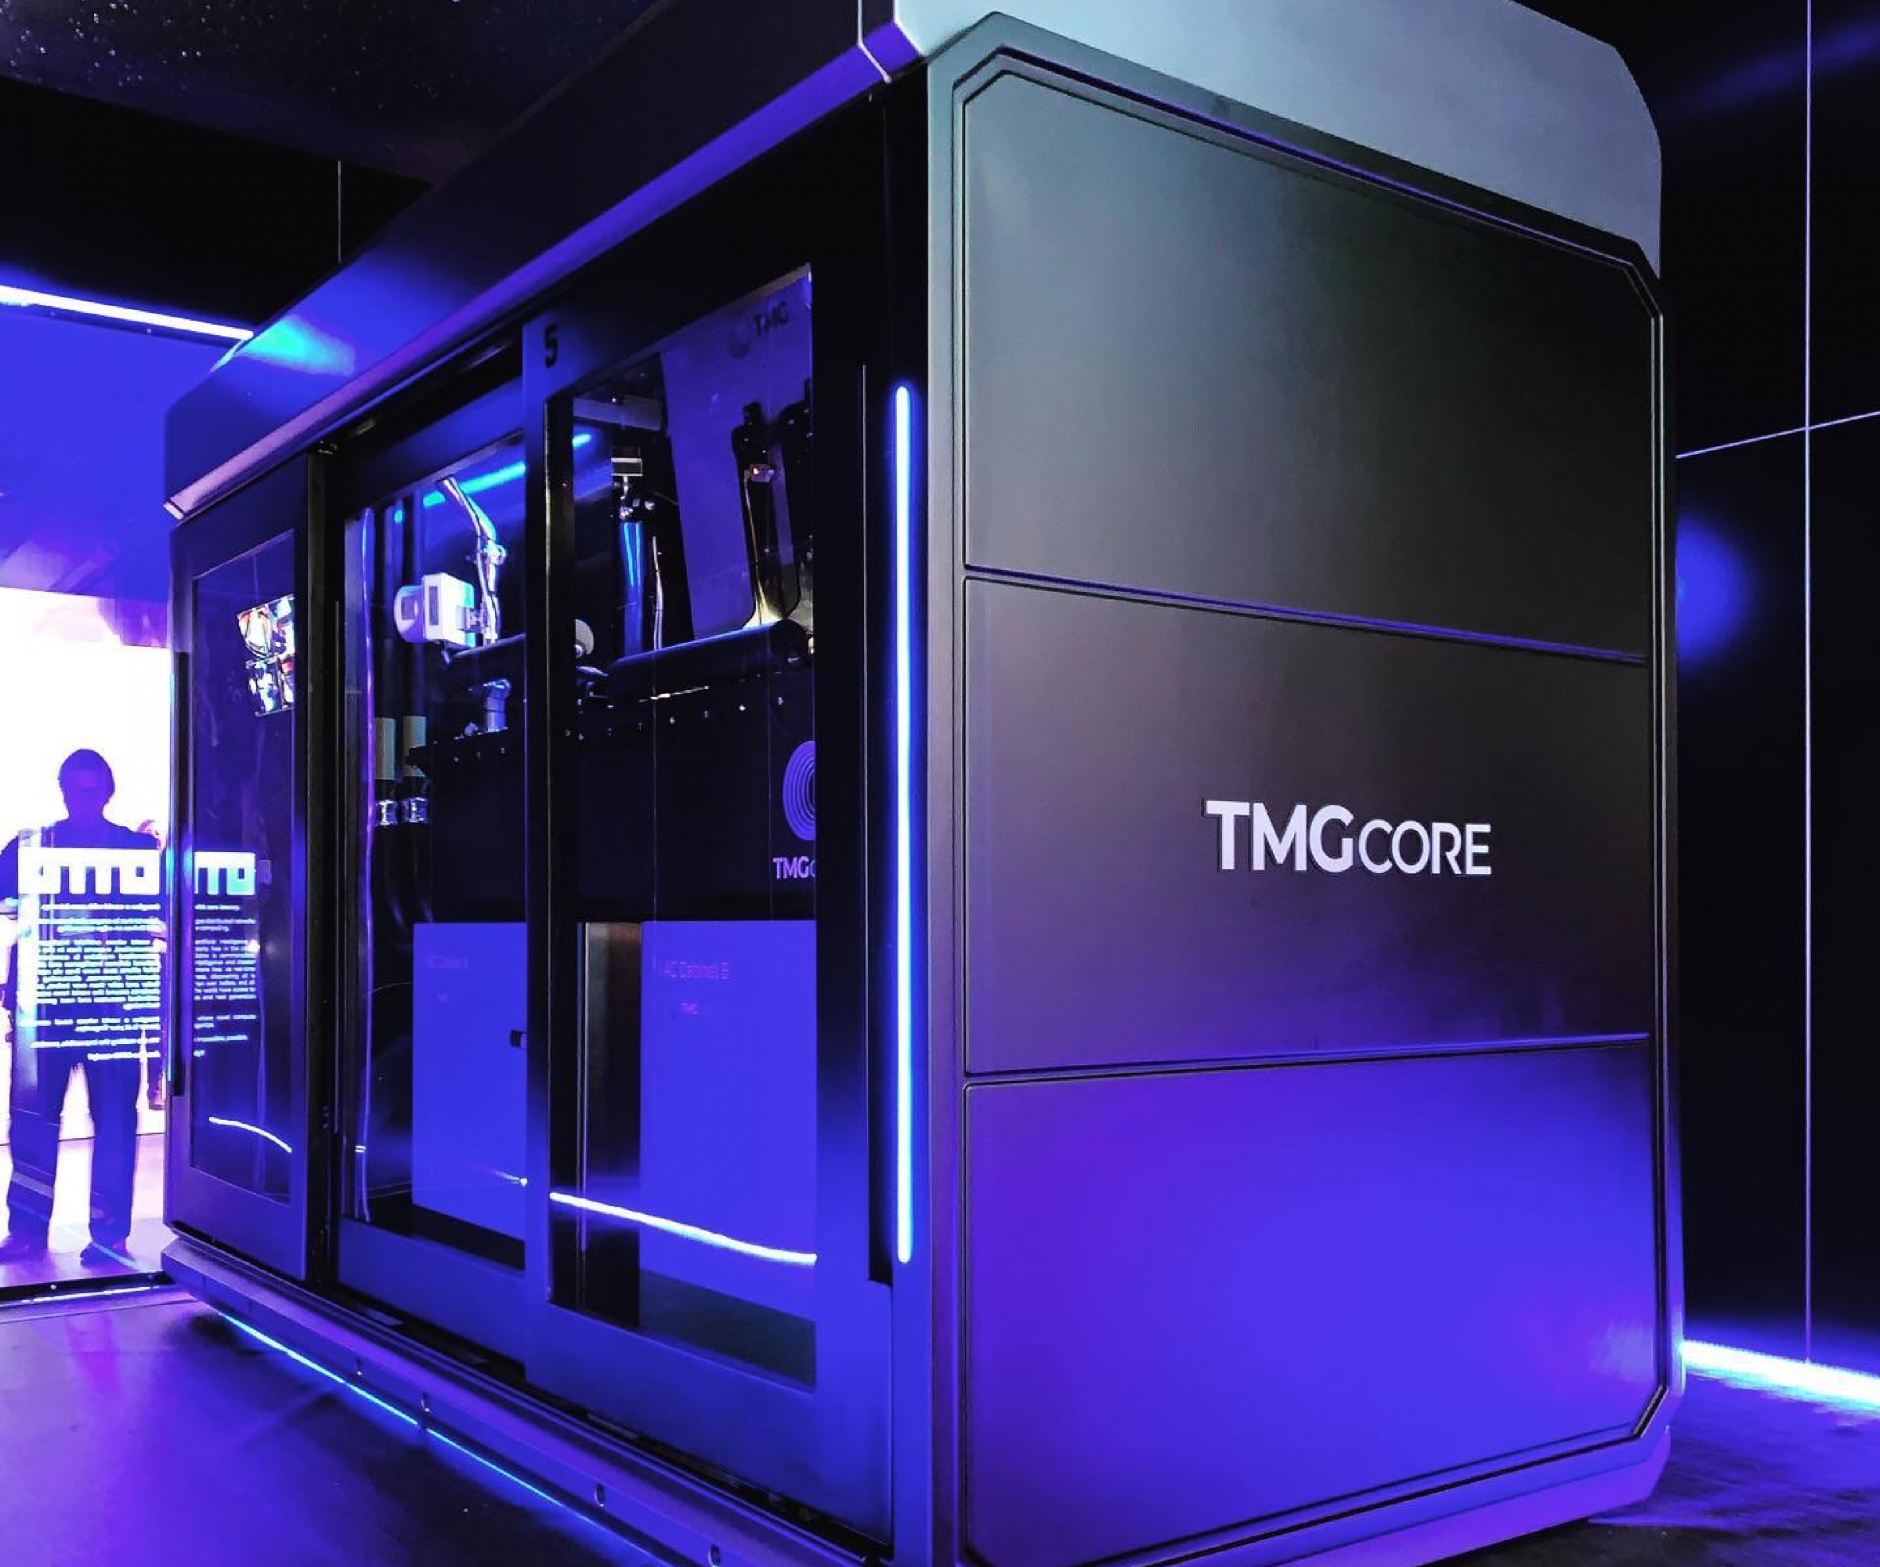 TMGcore 120 Machine